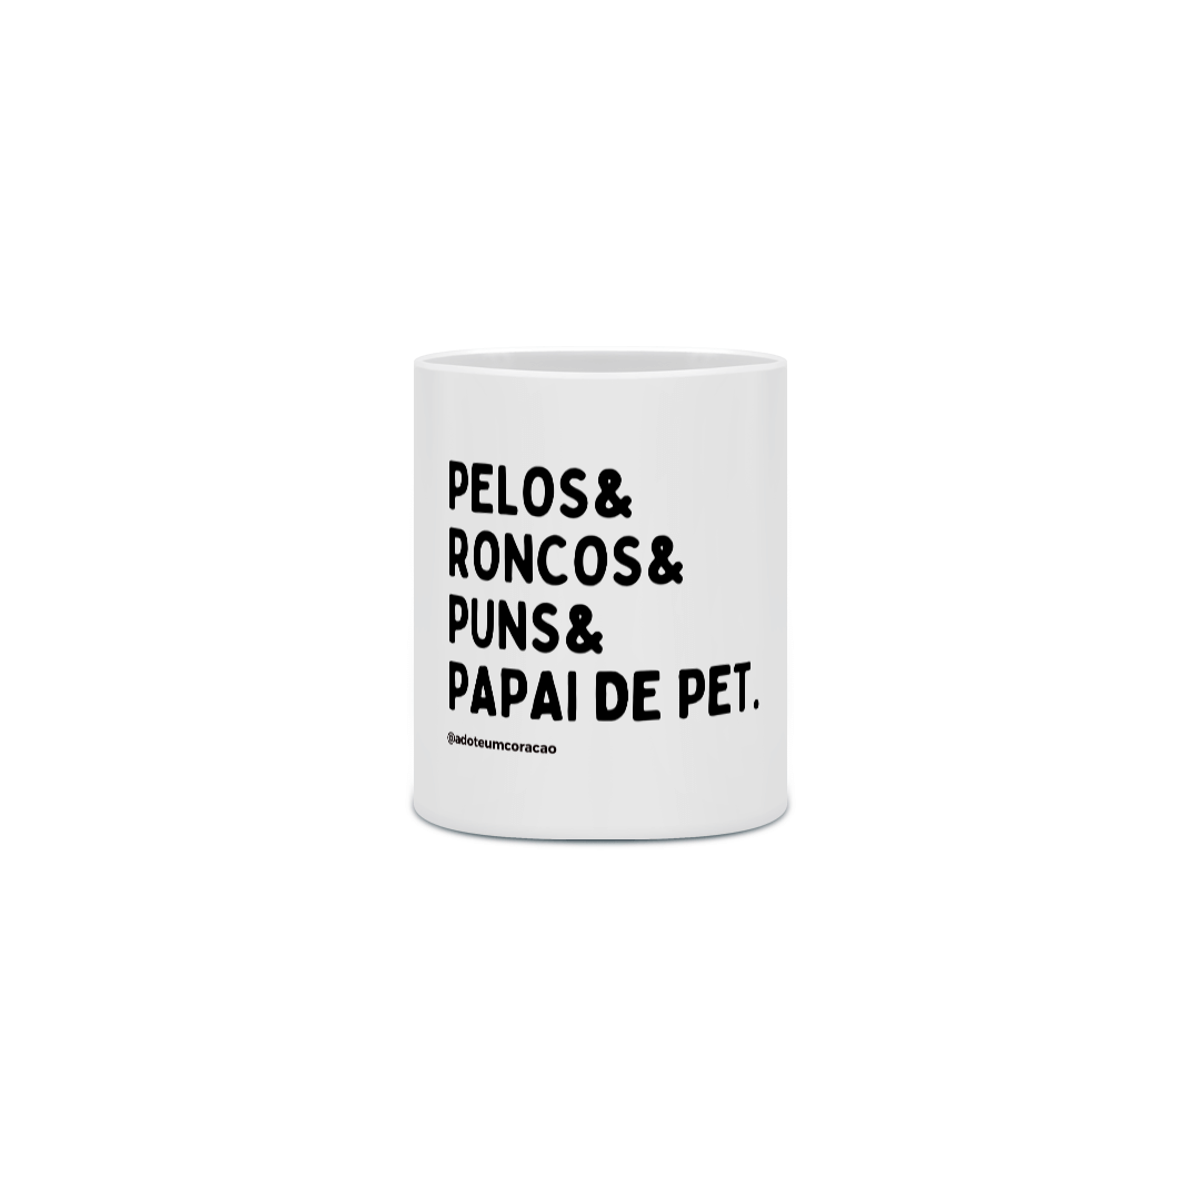 Nome do produto: Pelos&Roncos&Puns&Papai de Pet